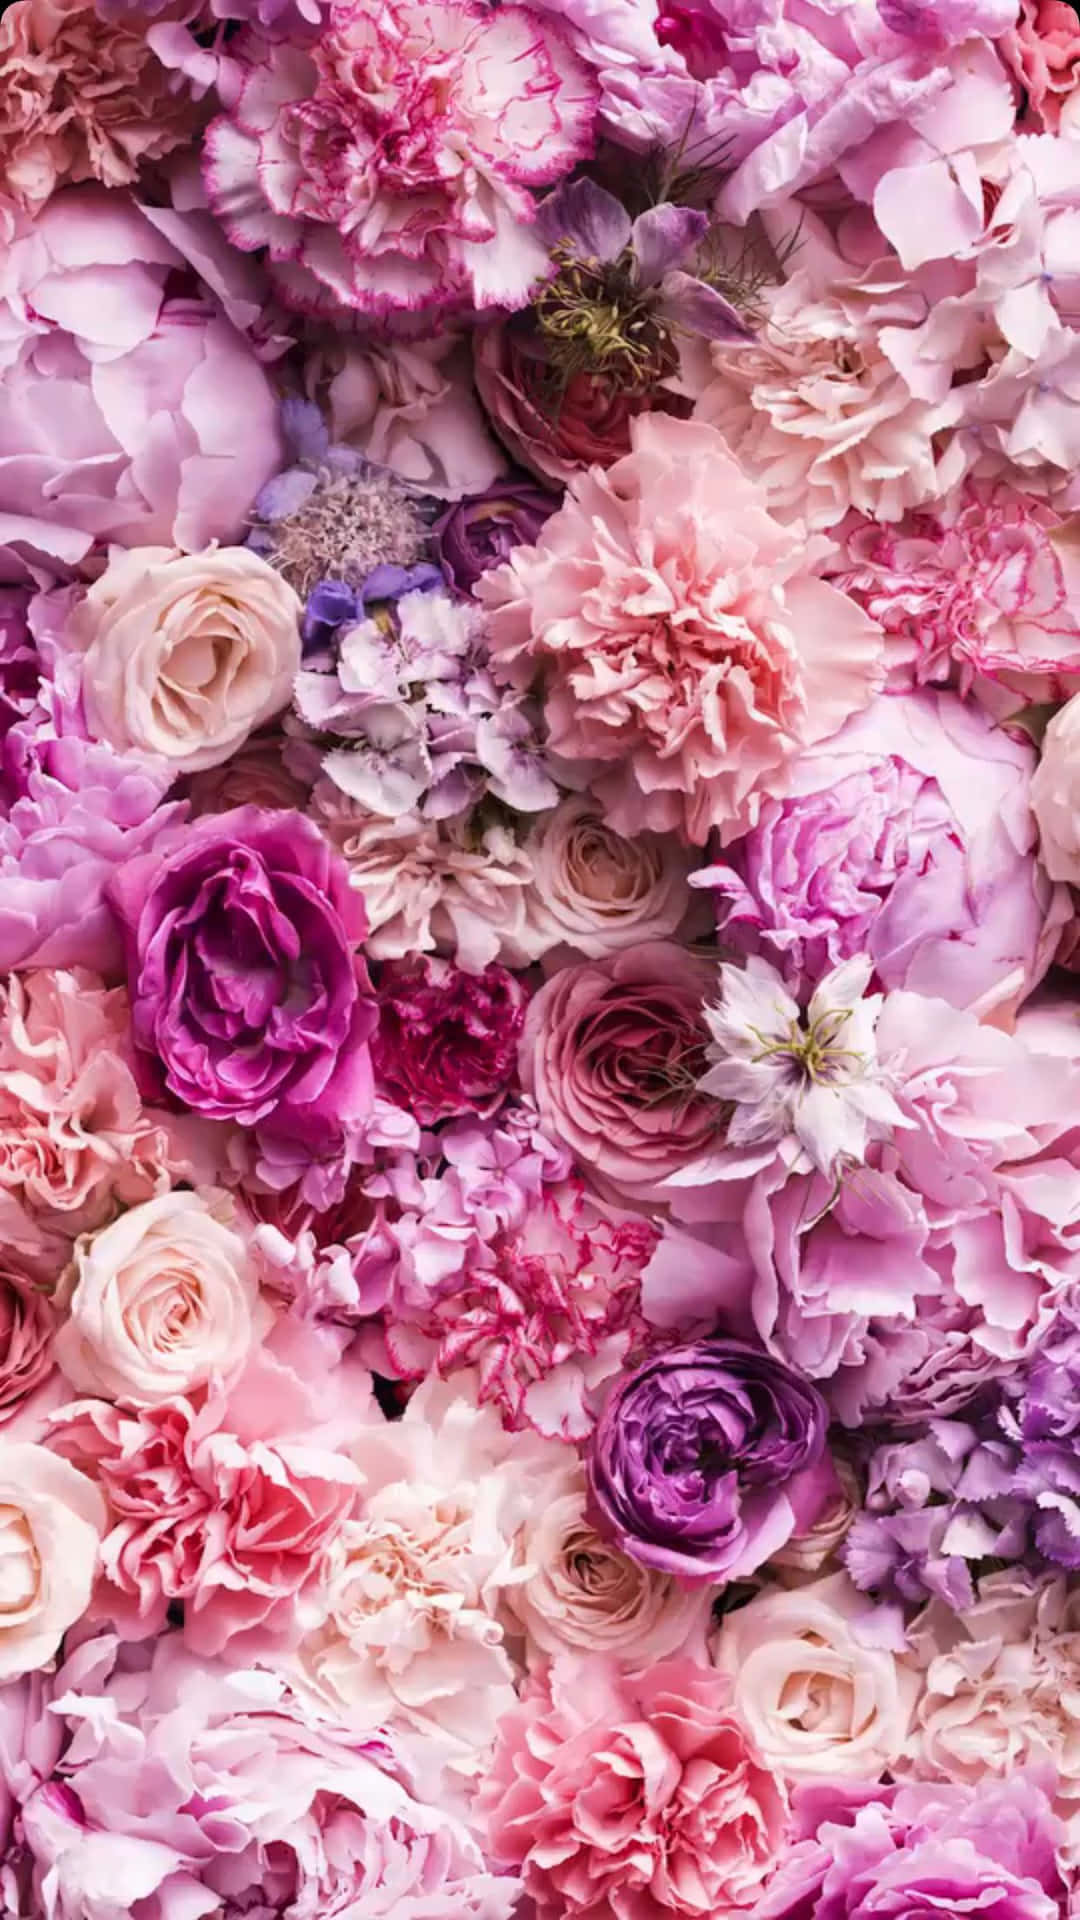 Hãy làm mới không gian sống của bạn với hình nền hoa hồng màu hồng nhạt cho iPhone. Với những gam màu dịu mát và nhẹ nhàng, các bông hoa đầy tươi mới sẽ khiến không gian sống của bạn tràn ngập sức sống và sự tươi mới. Hãy đến với chúng tôi để ngắm nhìn và cảm nhận những tác phẩm này.